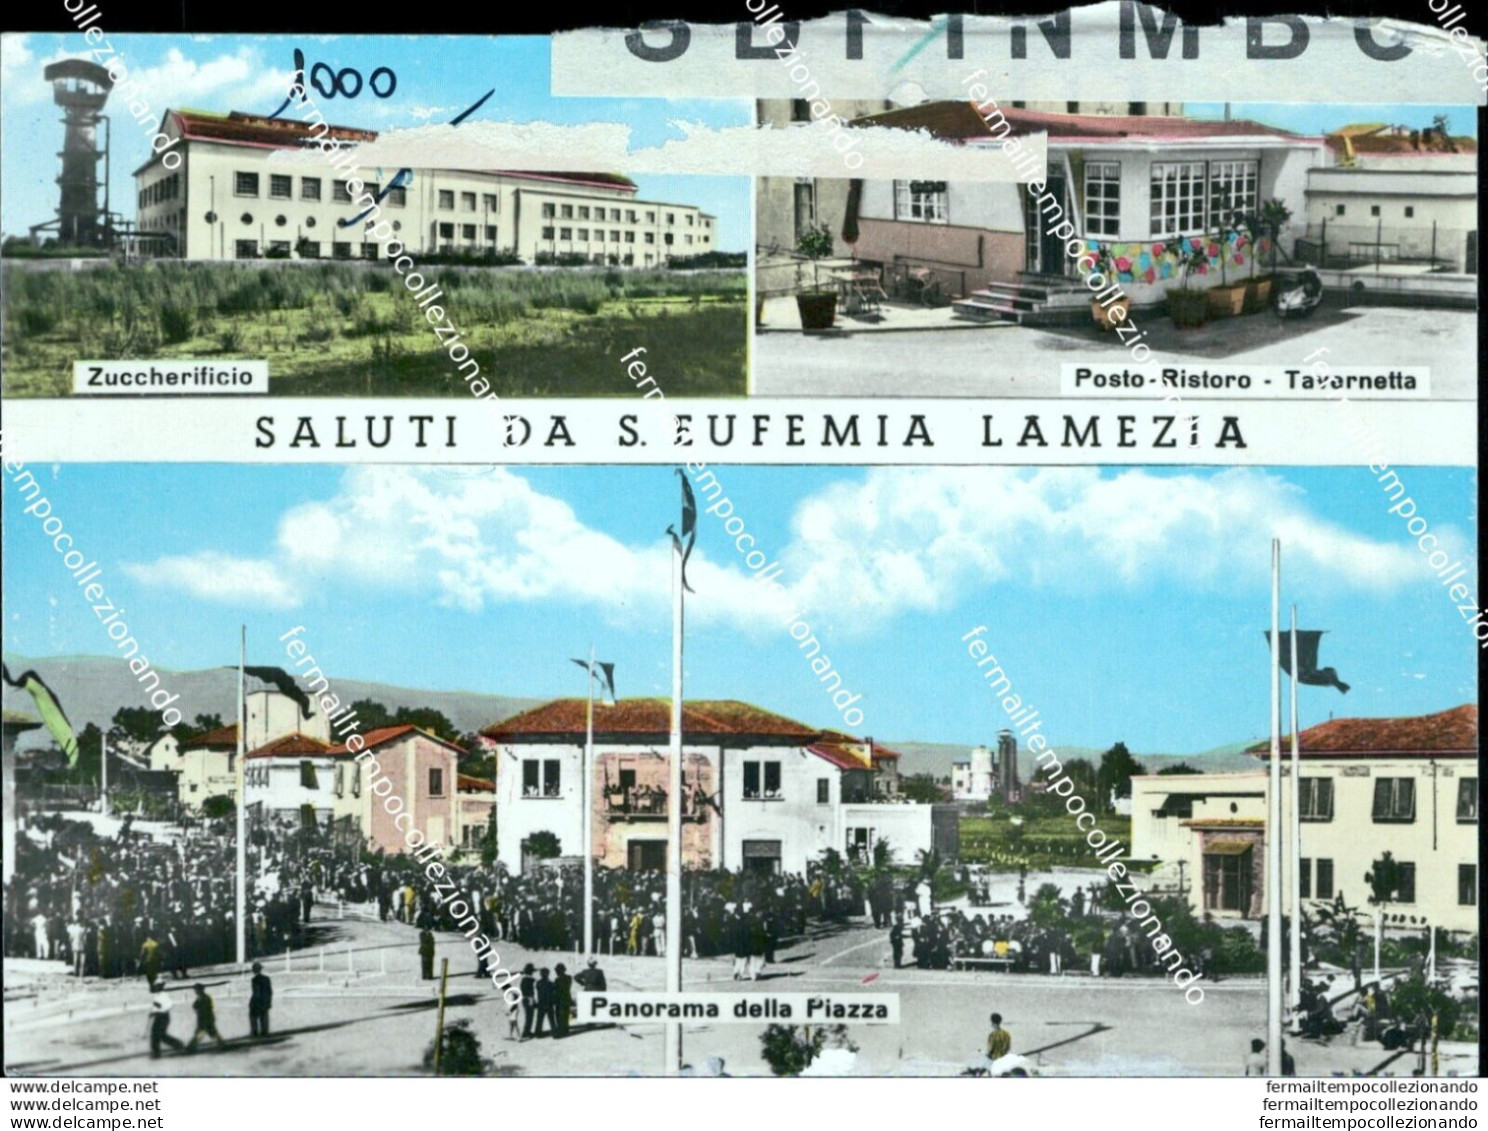 Ao627 Cartolina Bozza Campione Saluti Da S.eufemia Lamezia Provinciadi Catanzaro - Catanzaro